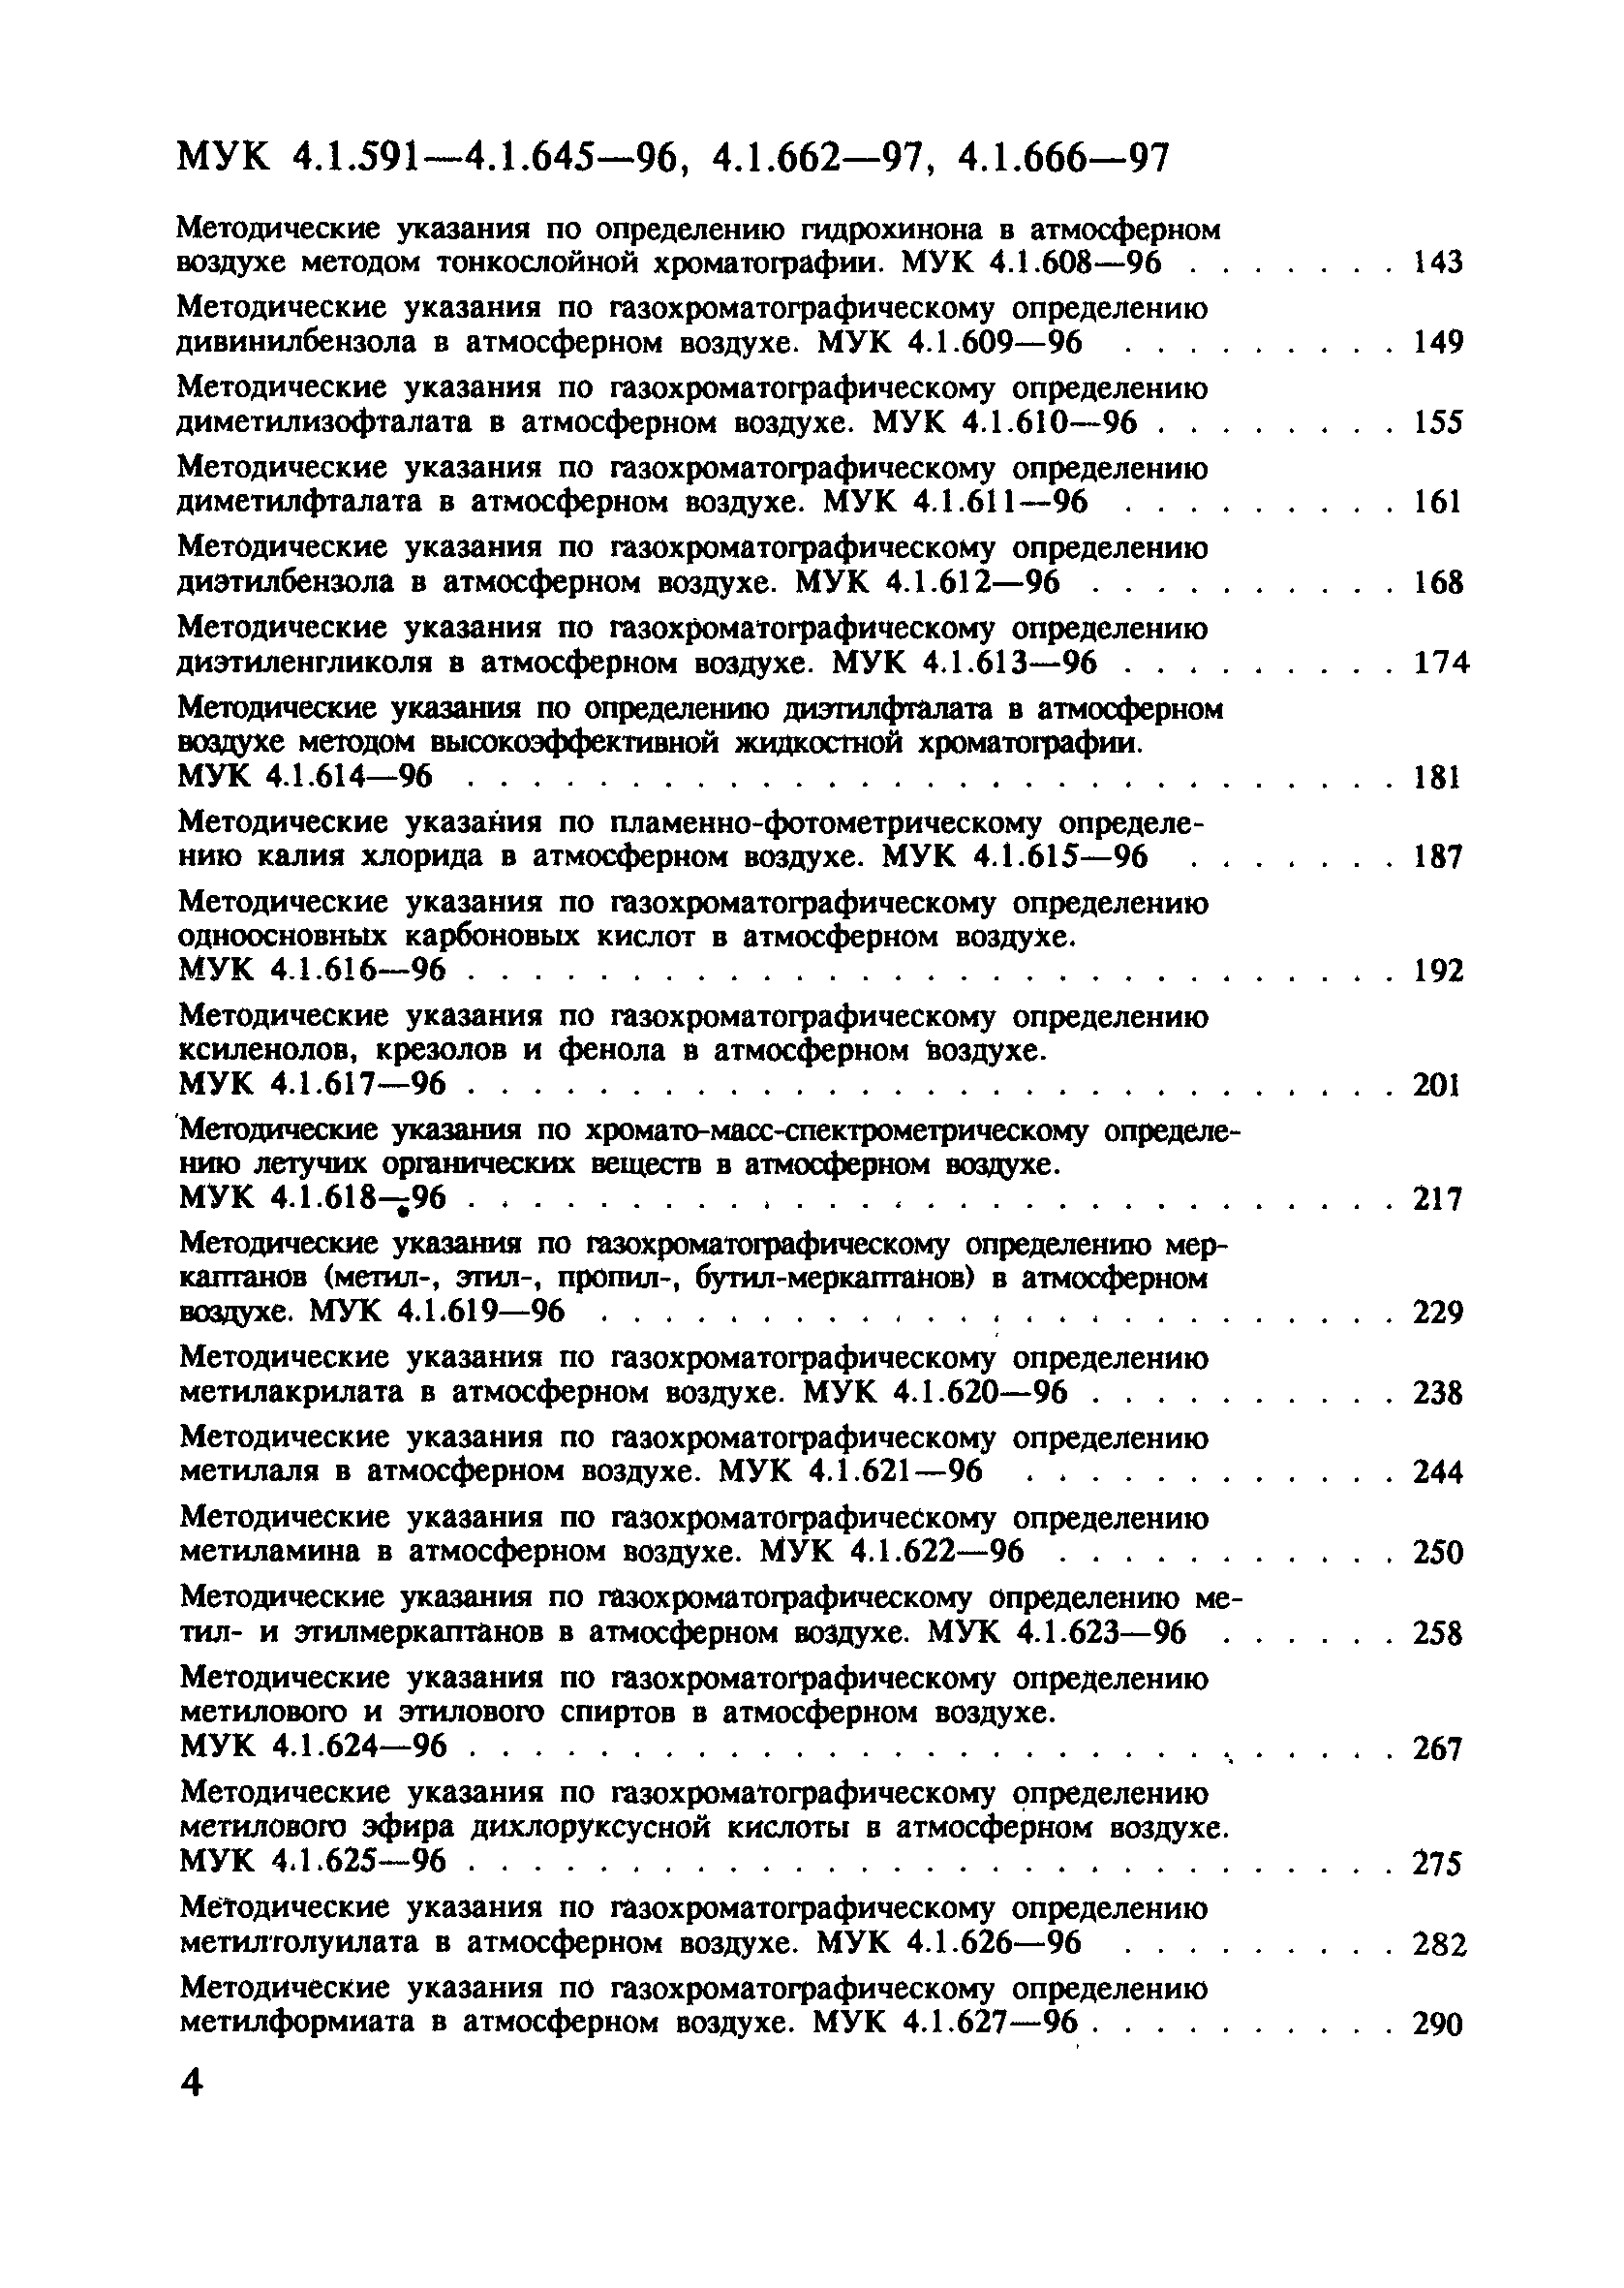 МУК 4.1.608-96